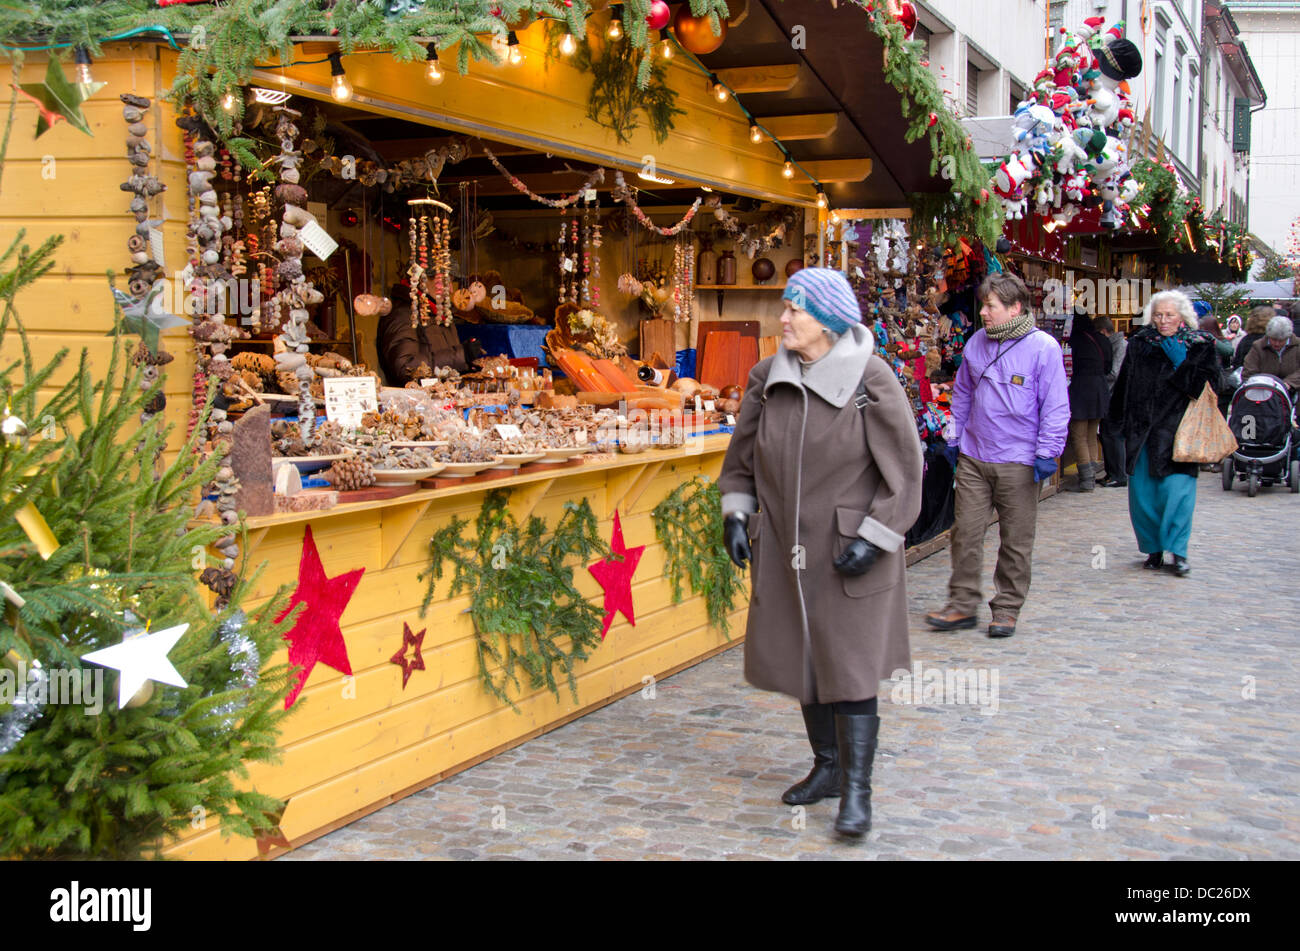 La Svizzera, Basilea. Basilea vacanza invernale Mercato a Barfusserplatz. Fornitore tipico stand al mercato invernale con la gente a fare shopping. Foto Stock